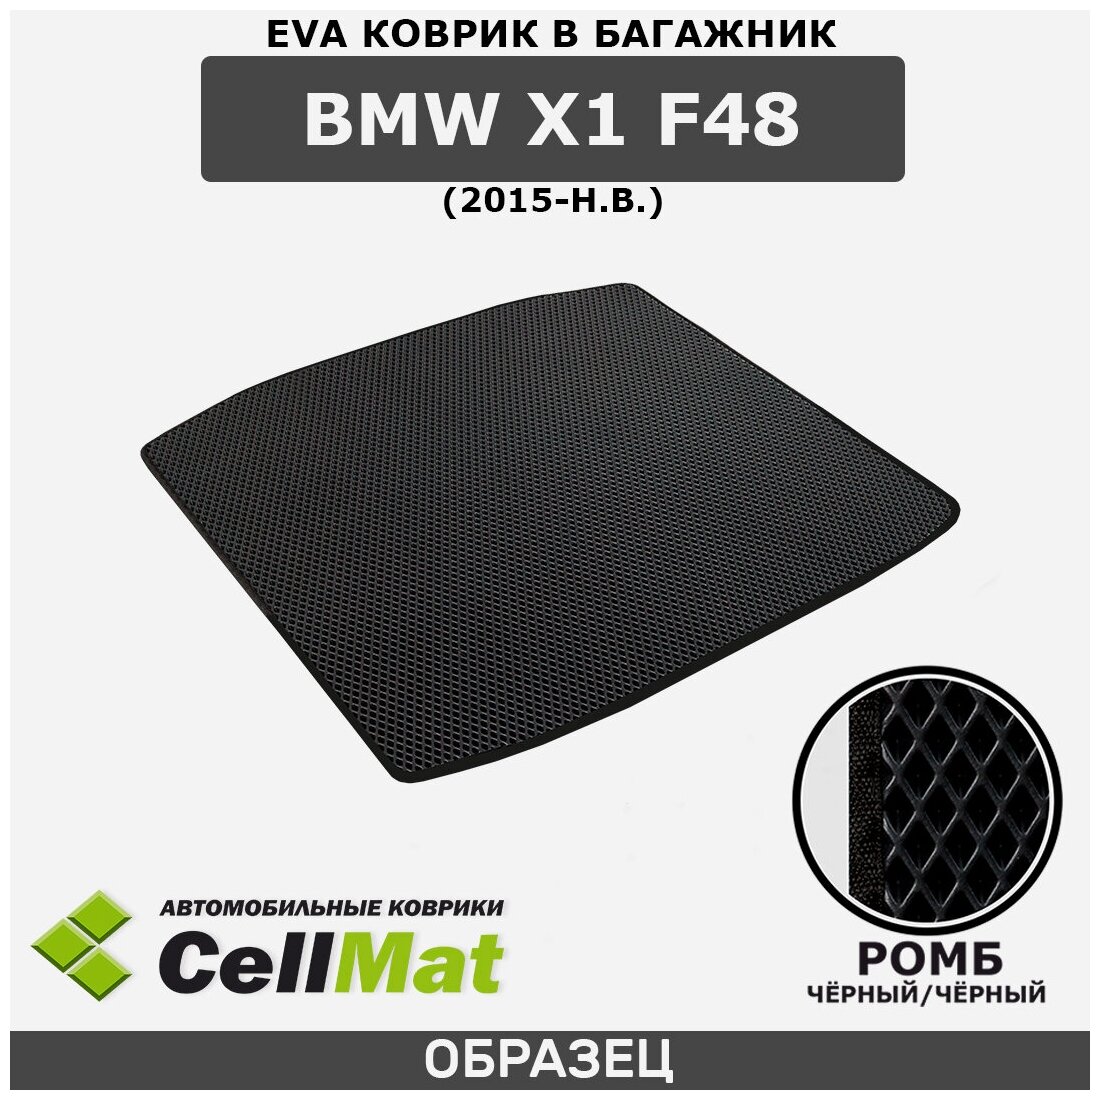 ЭВА ЕВA EVA коврик CellMat в багажник BMW X1 F48, БМВ X1 F48, 2015-н. в.